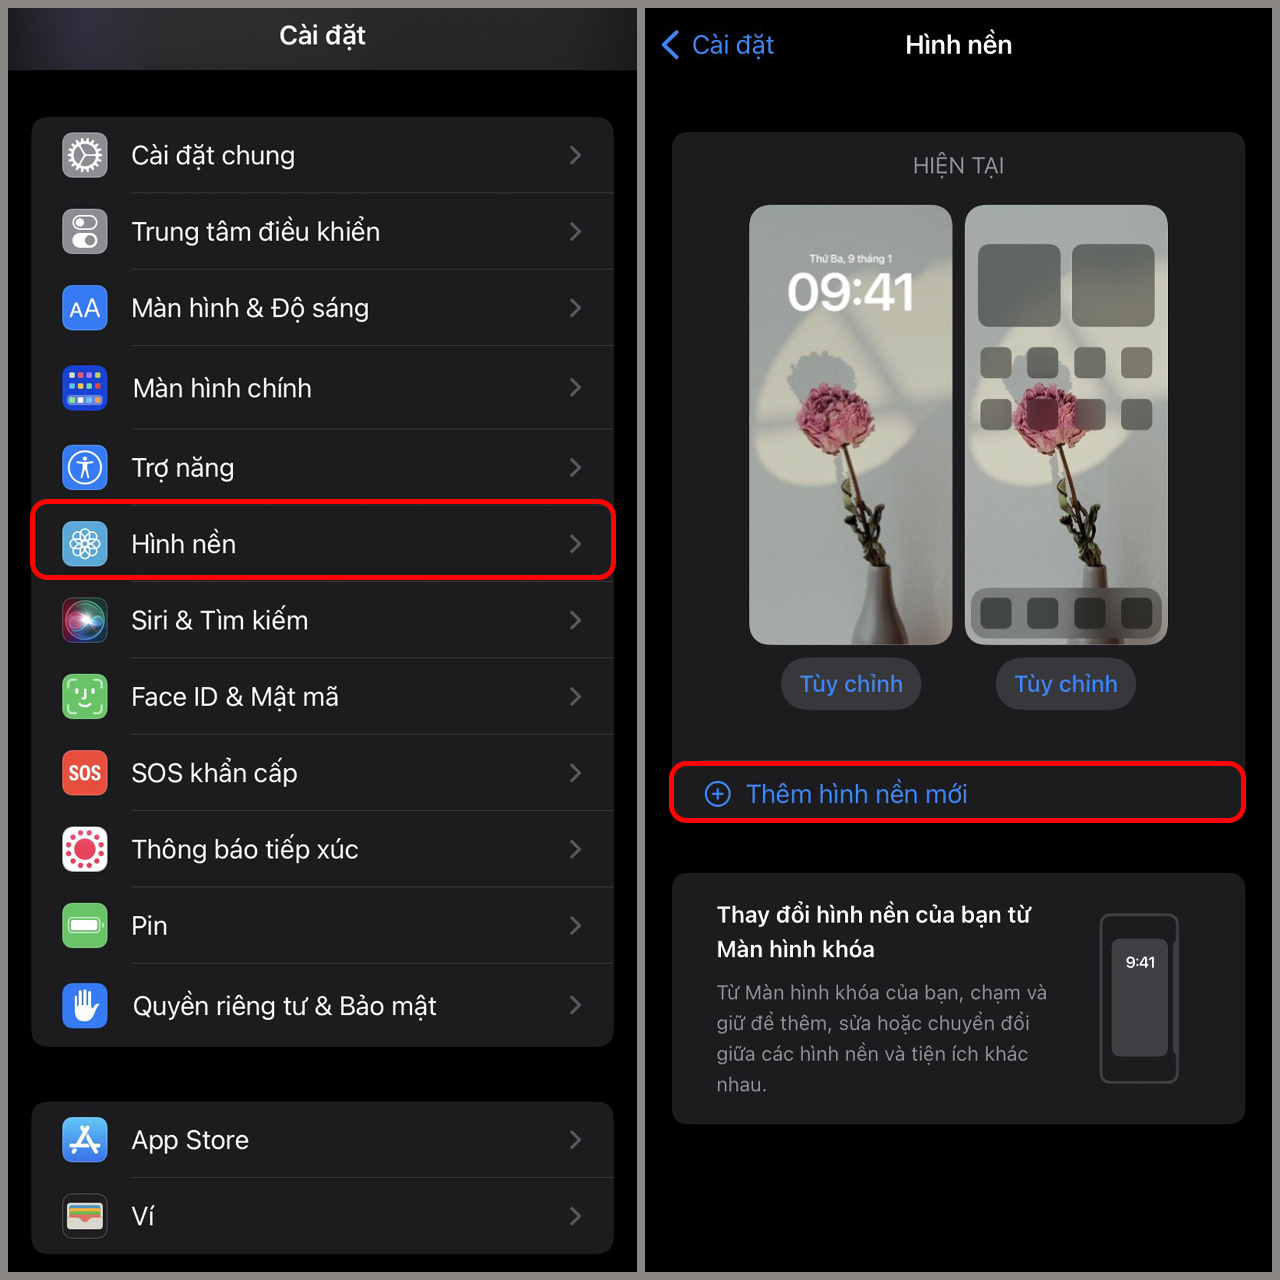 Cách đổi màn hình điện thoại cho hệ điều hành iOS và Android